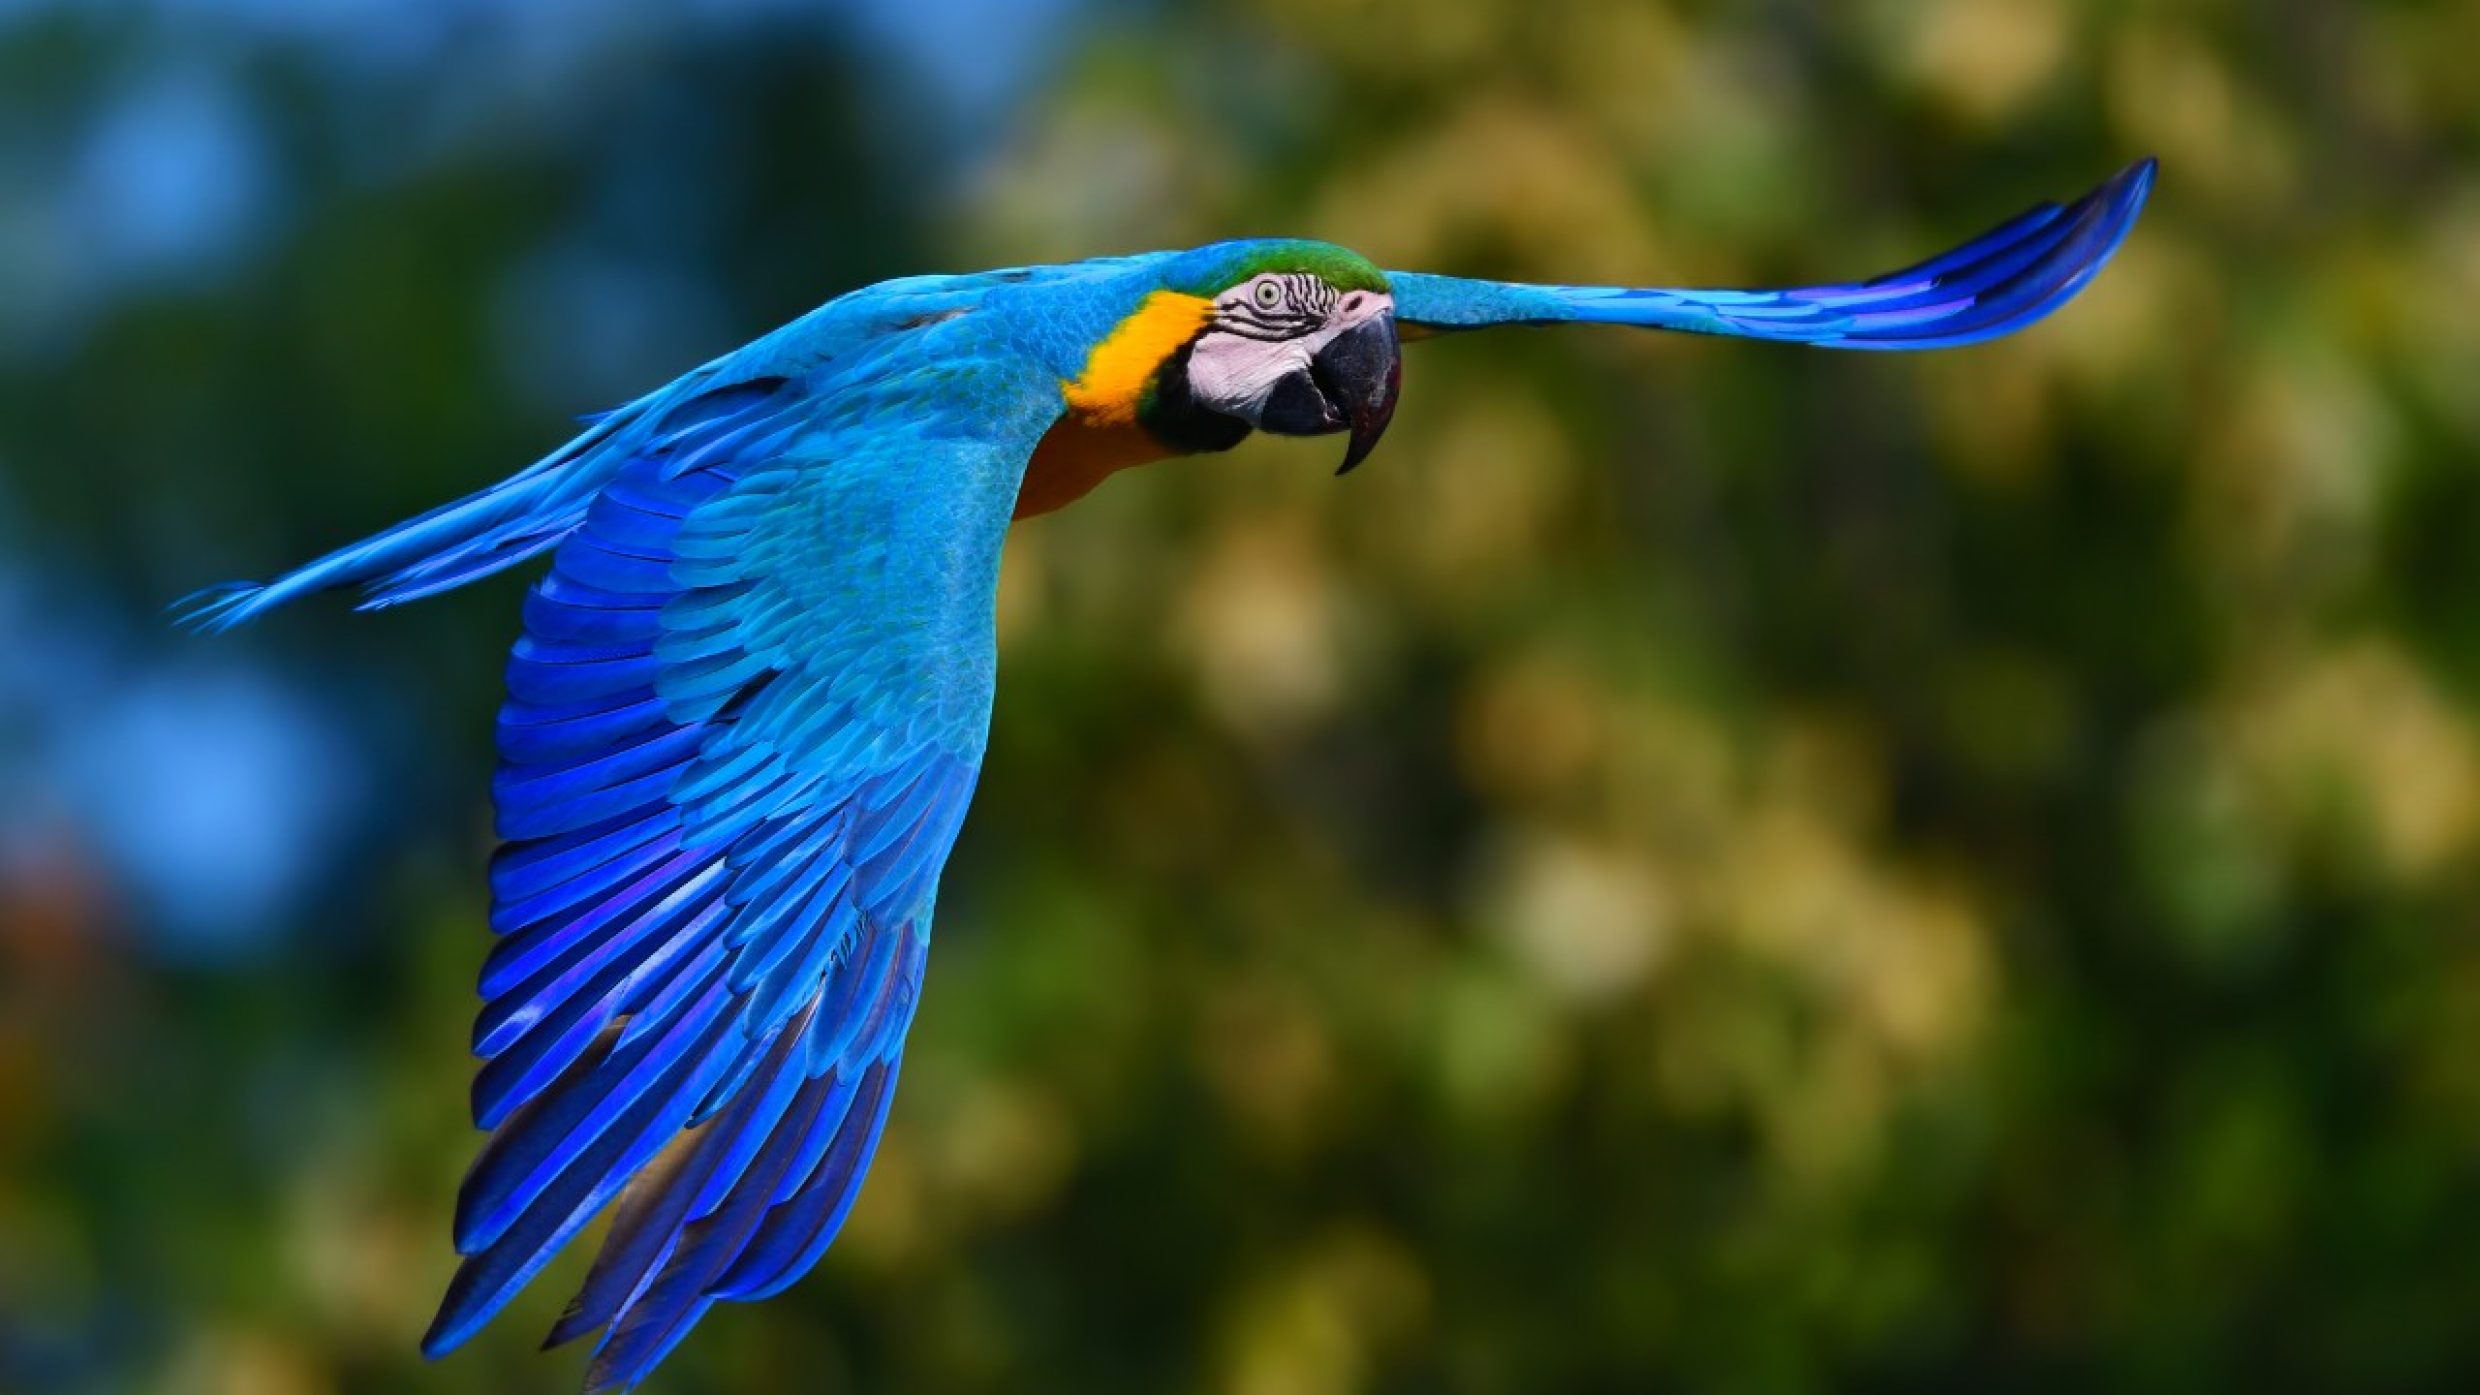 Les perroquets sont les seuls oiseaux dont l’âge peut dépasser celui de l’homme. Ils peuvent vivre jusqu’à 100 ans. En Angleterre, l’ara Ararauna le plus vieux connu a même atteint 104 ans.